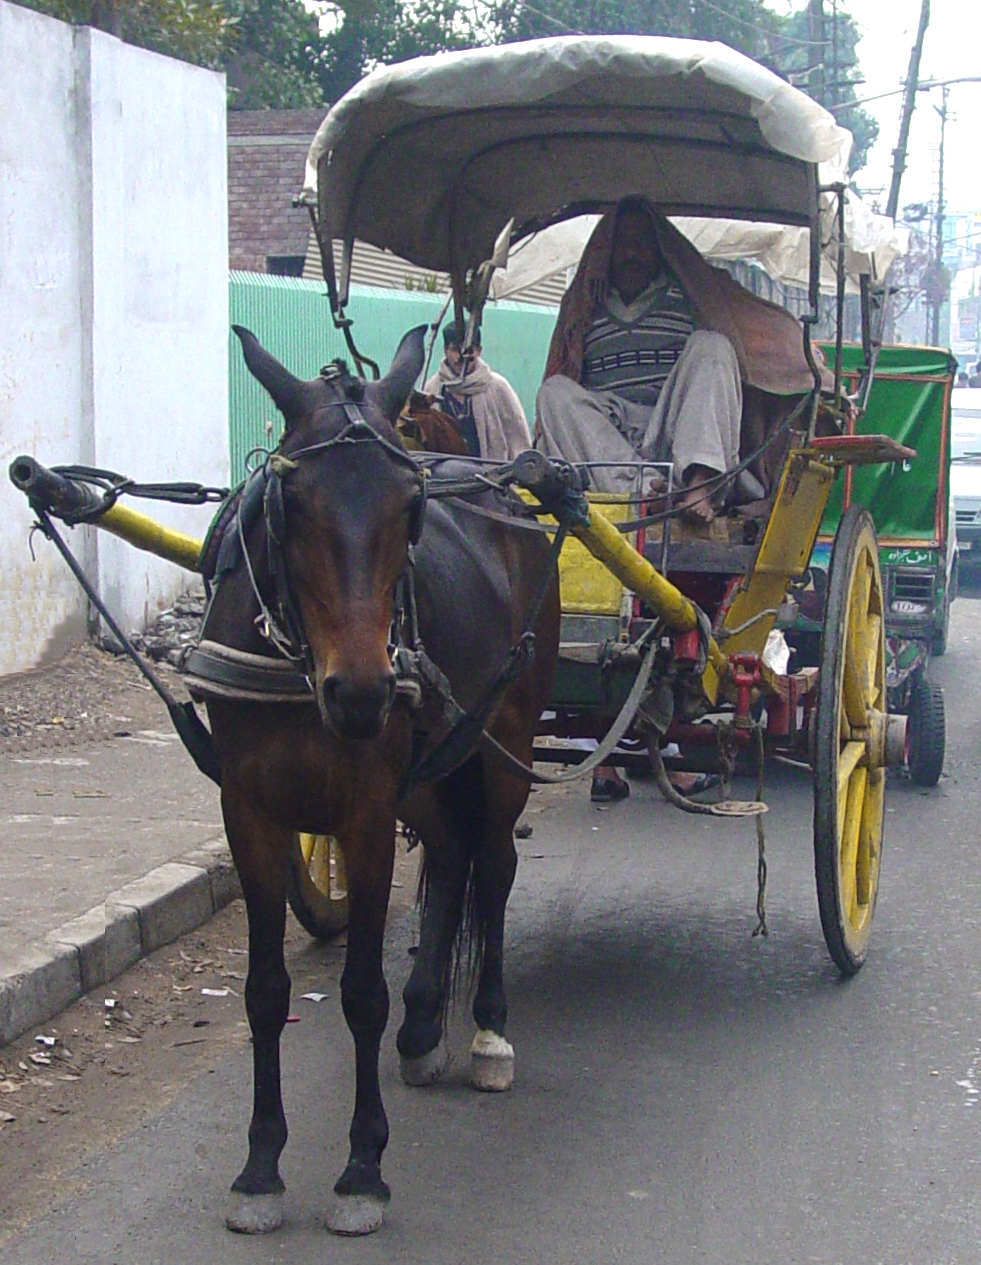 Horse taxi